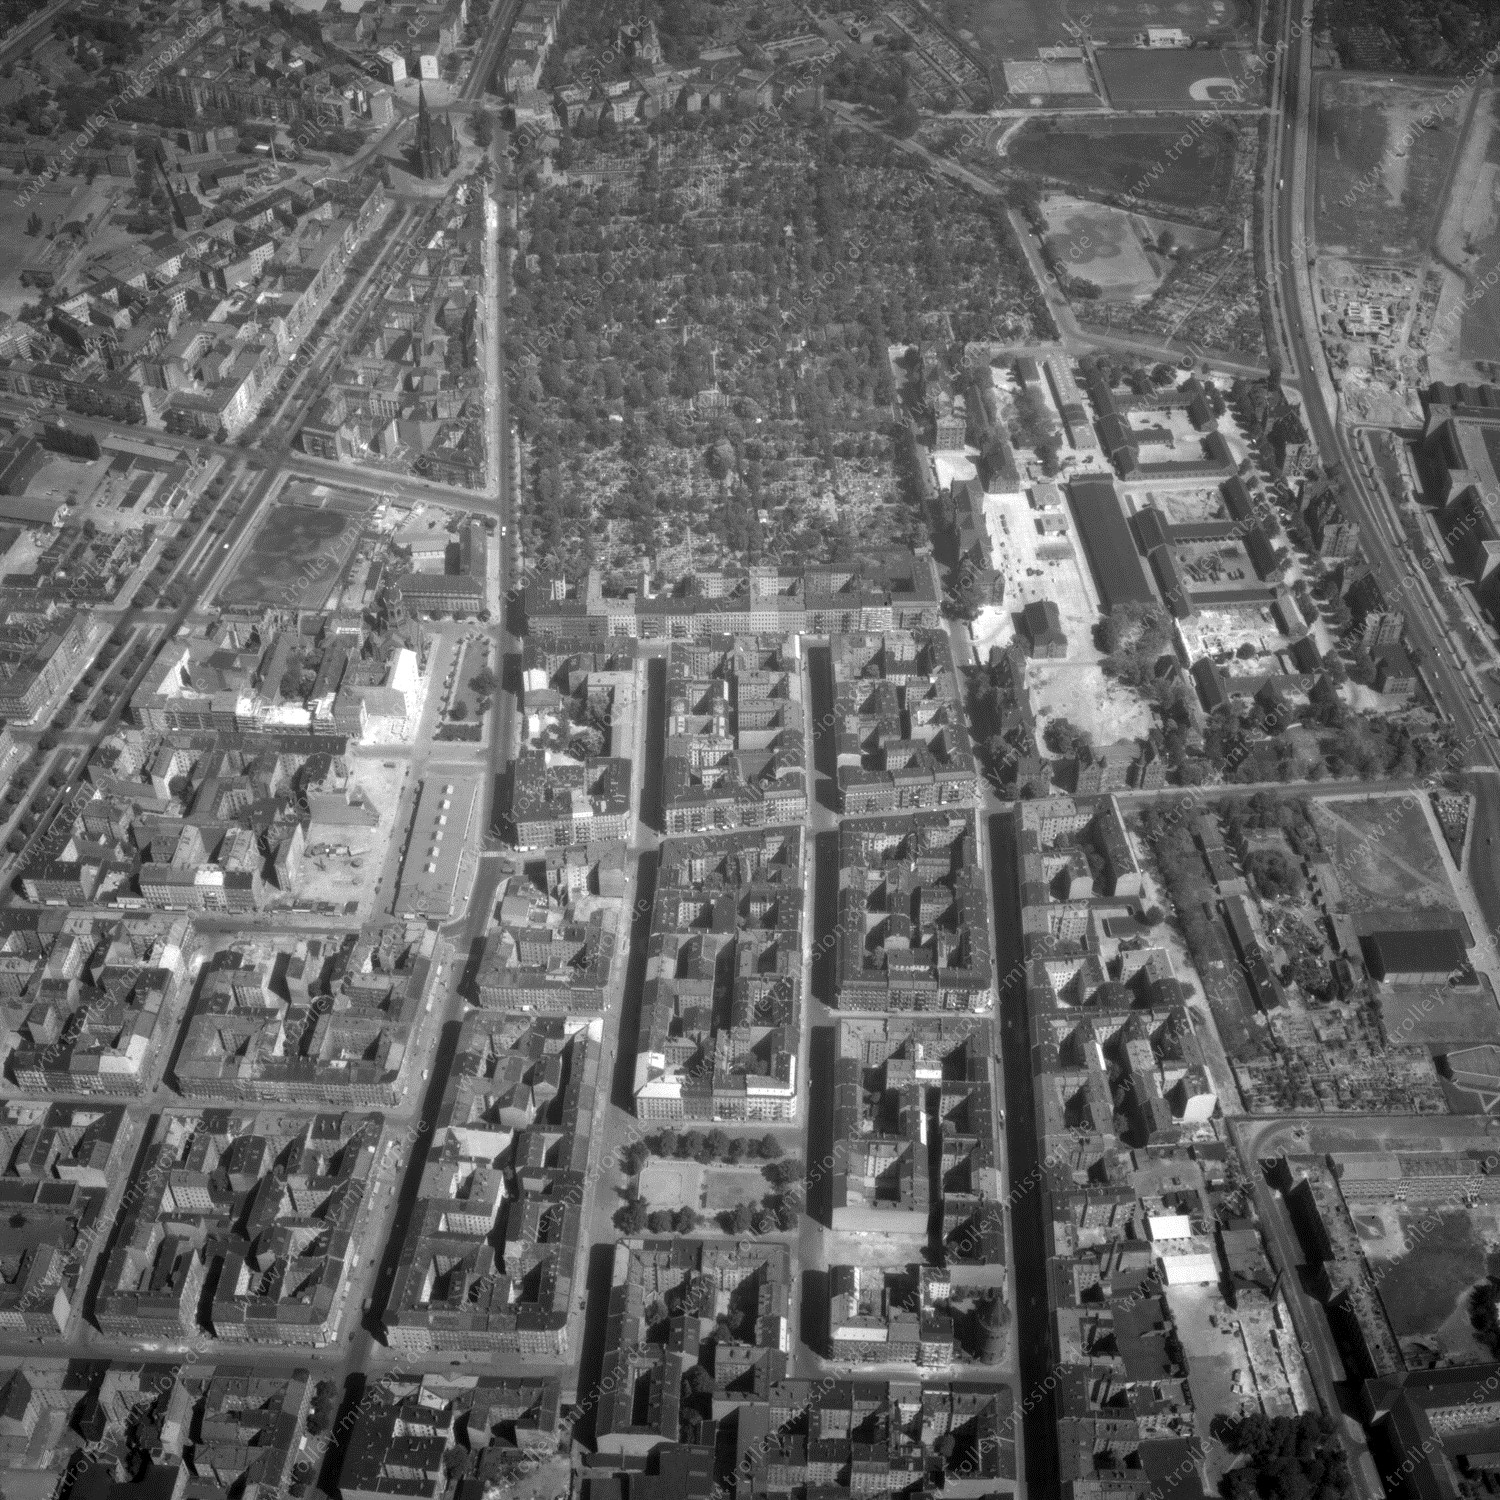 Alte Fotos und Luftbilder von Berlin - Luftbildaufnahme Nr. 02 - Historische Luftaufnahmen von West-Berlin aus dem Jahr 1954 - Flugstrecke Juliett